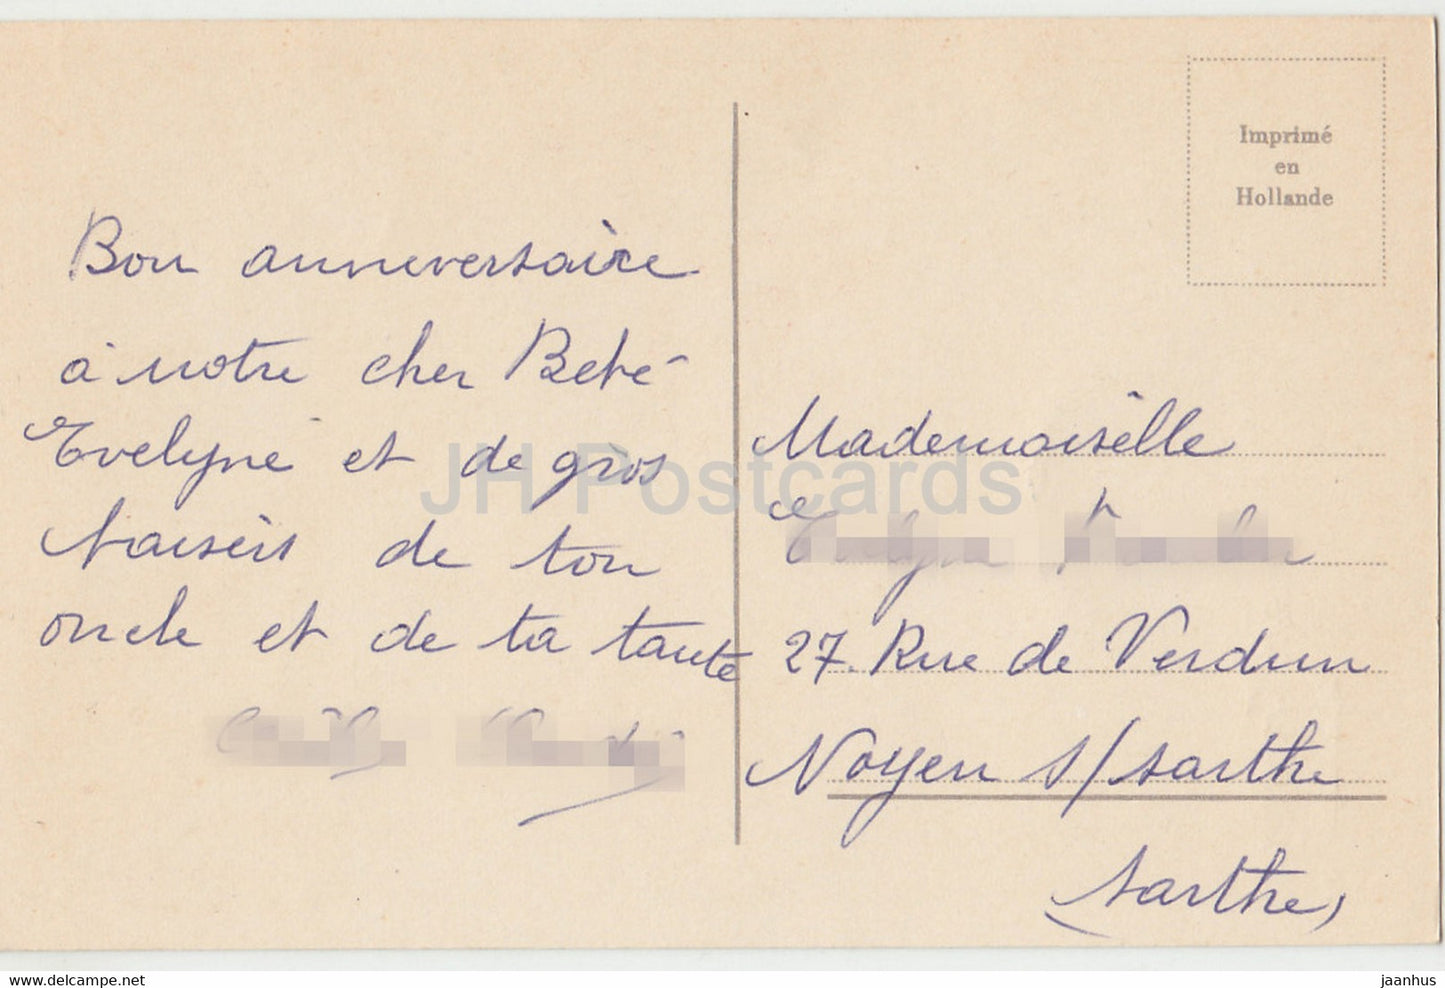 Geburtstagsgrußkarte - Heureux Anniversaire - Blumen - Tulpen - 1 - Illustration - alte Postkarte - Frankreich - gebraucht